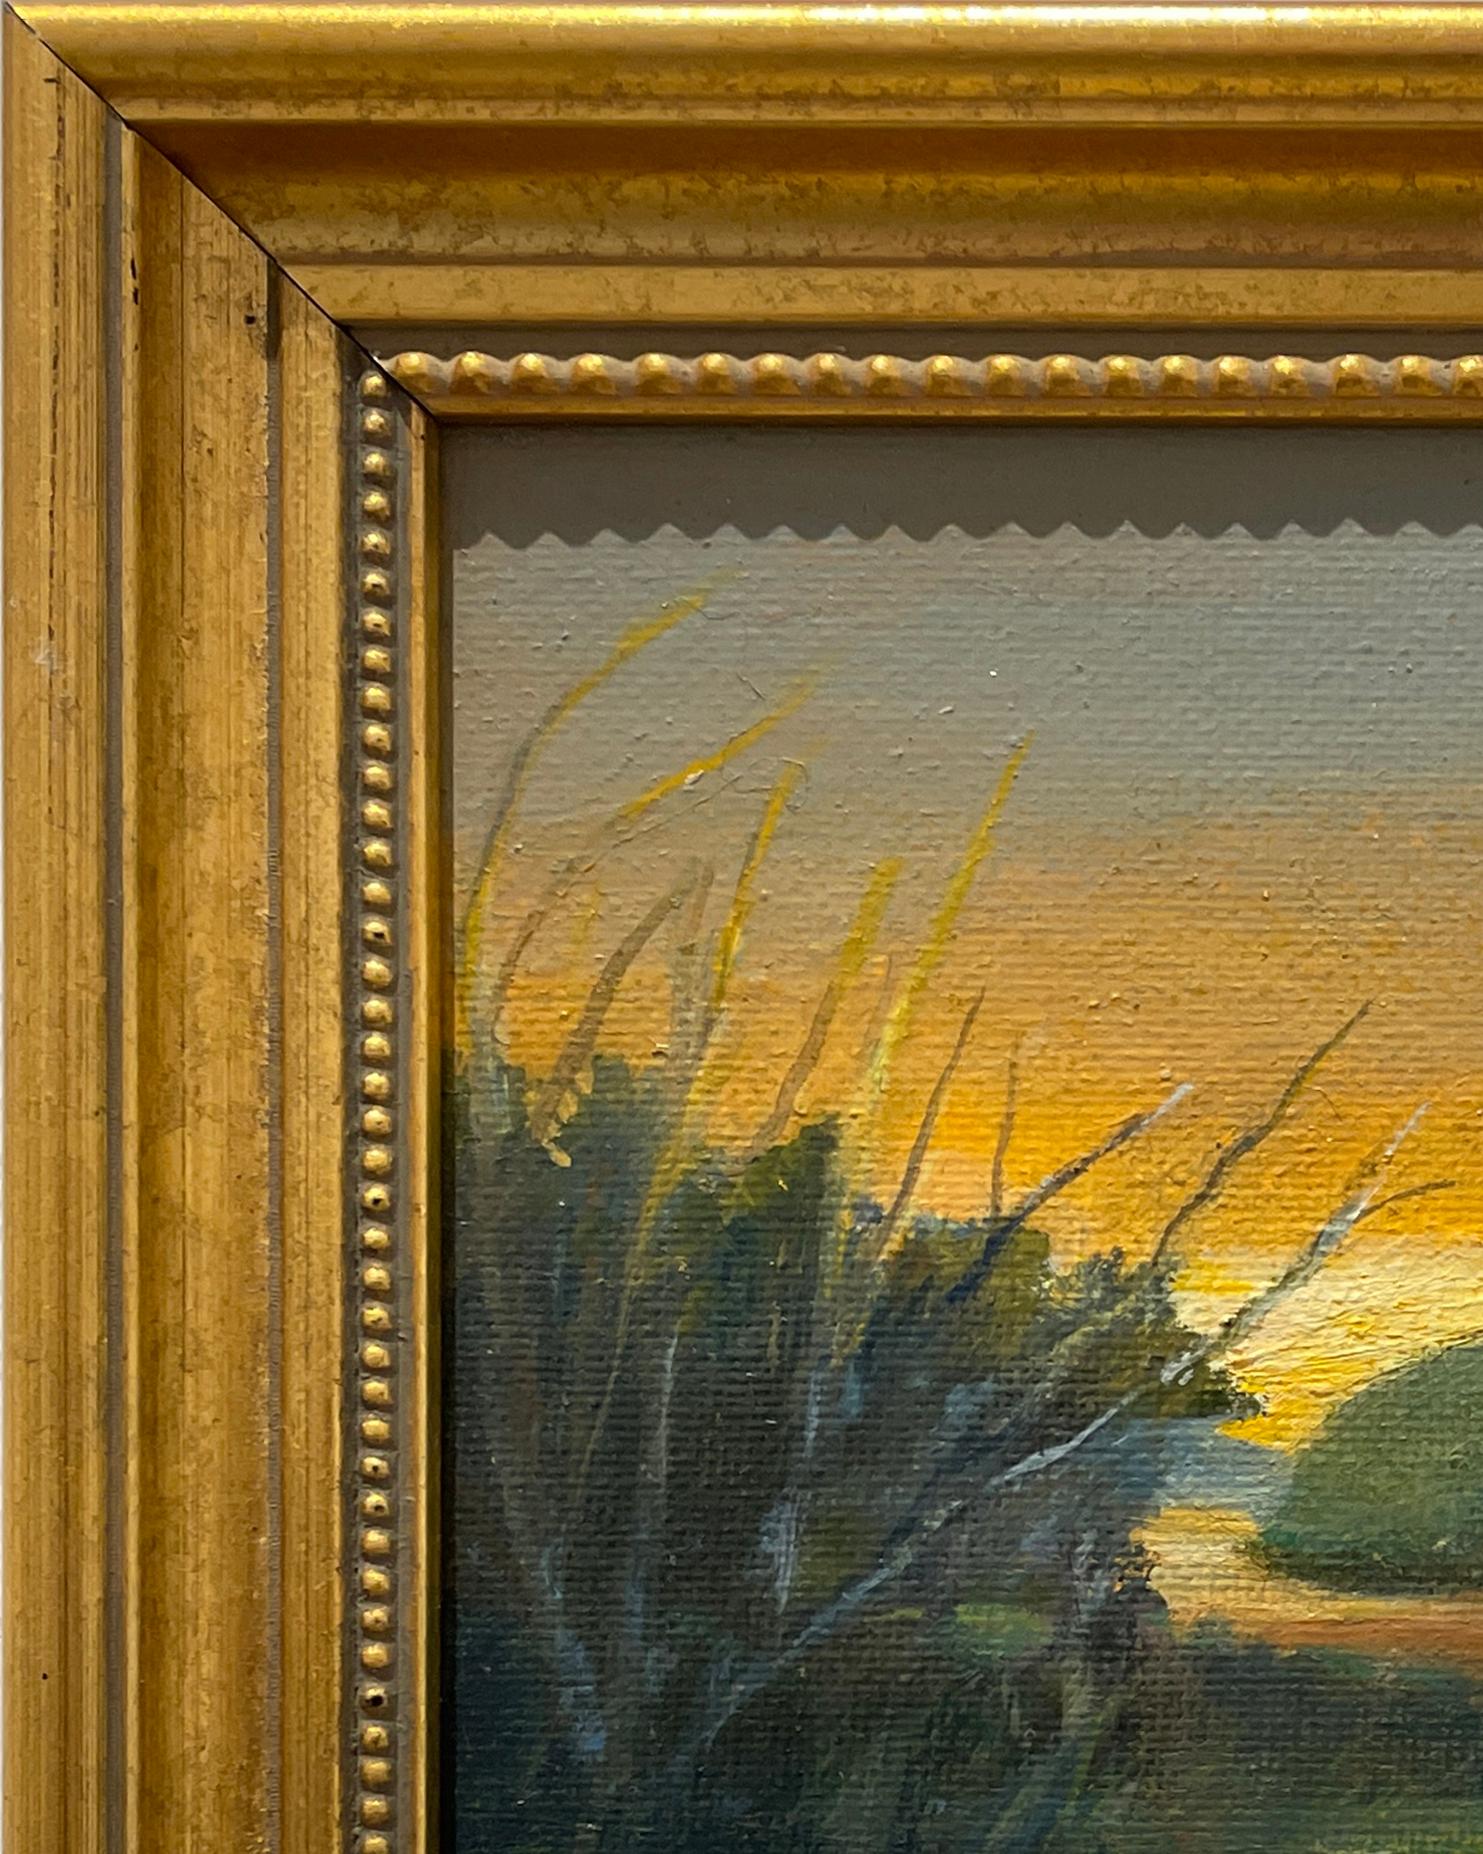 Soft Sky (Landschaft mit Sonnenaufgang über dem Sumpf, beeinflusst von der Hudson River School) – Painting von Judy Reynolds